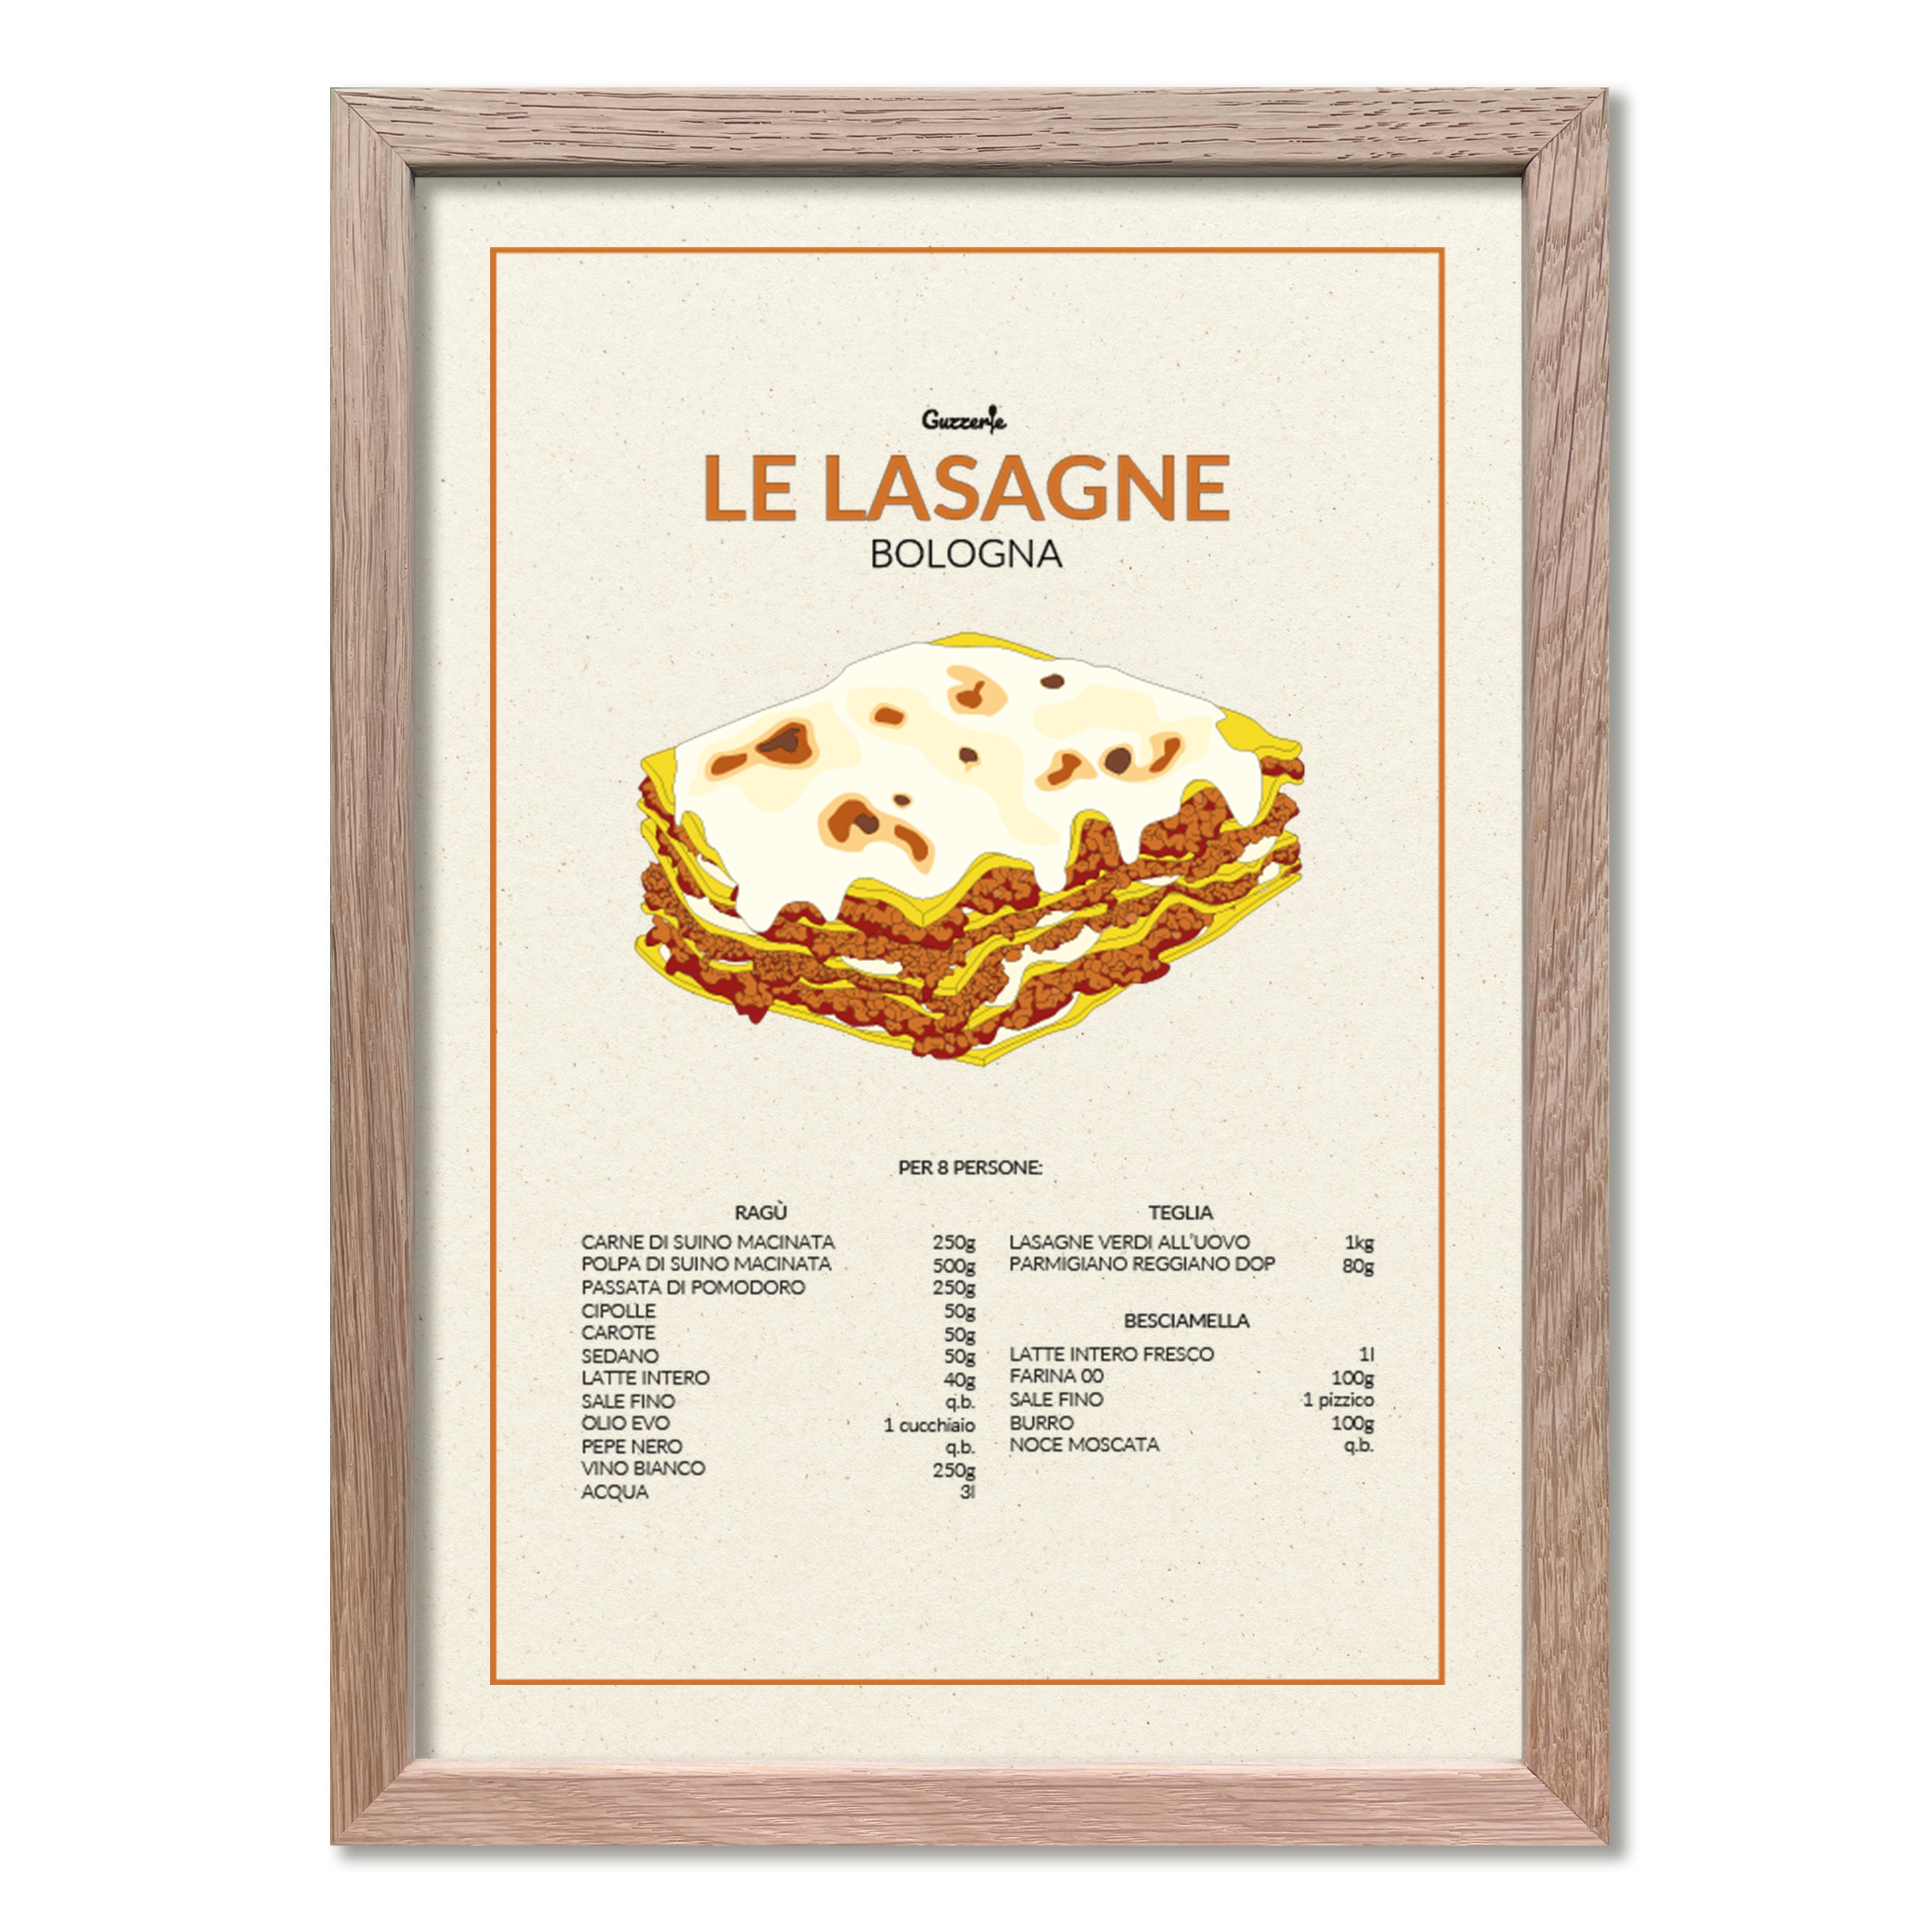 Le Lasagne